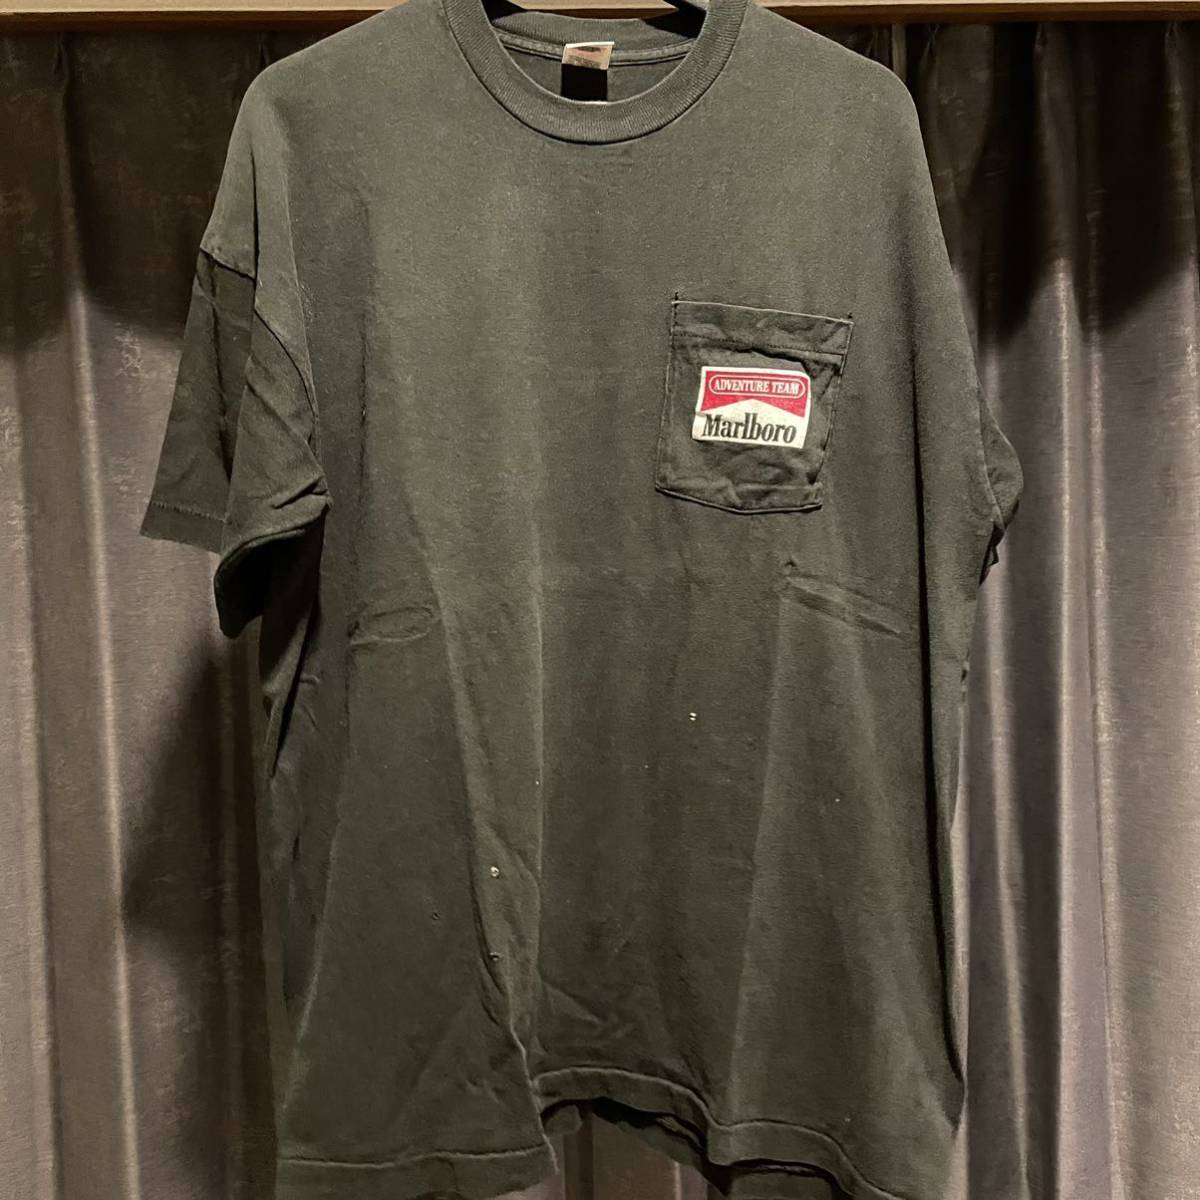 90s マルボロ snake pass ヘビプリント ポケットtシャツ XL USA製 ヴィンテージ フルーツオブザルーム